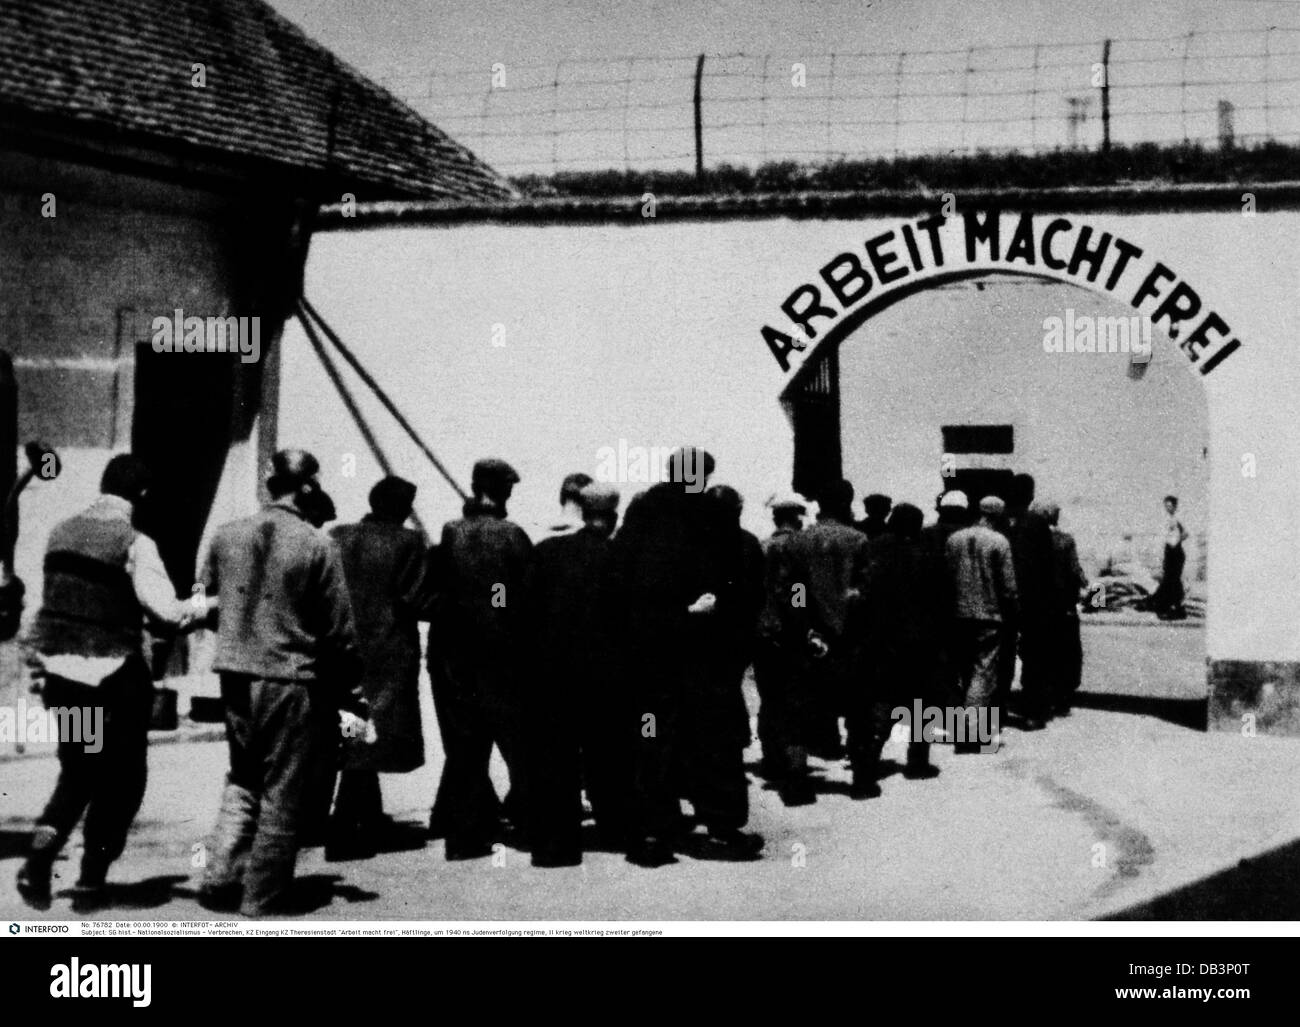 Nazional socialismo / nazismo, crimini, campo di concentramento Theresienstadt, detenuti all'ingresso, 'Arbeit macht frei' (il lavoro fa libero), circa 1942, diritti aggiuntivi-clearences-non disponibili Foto Stock